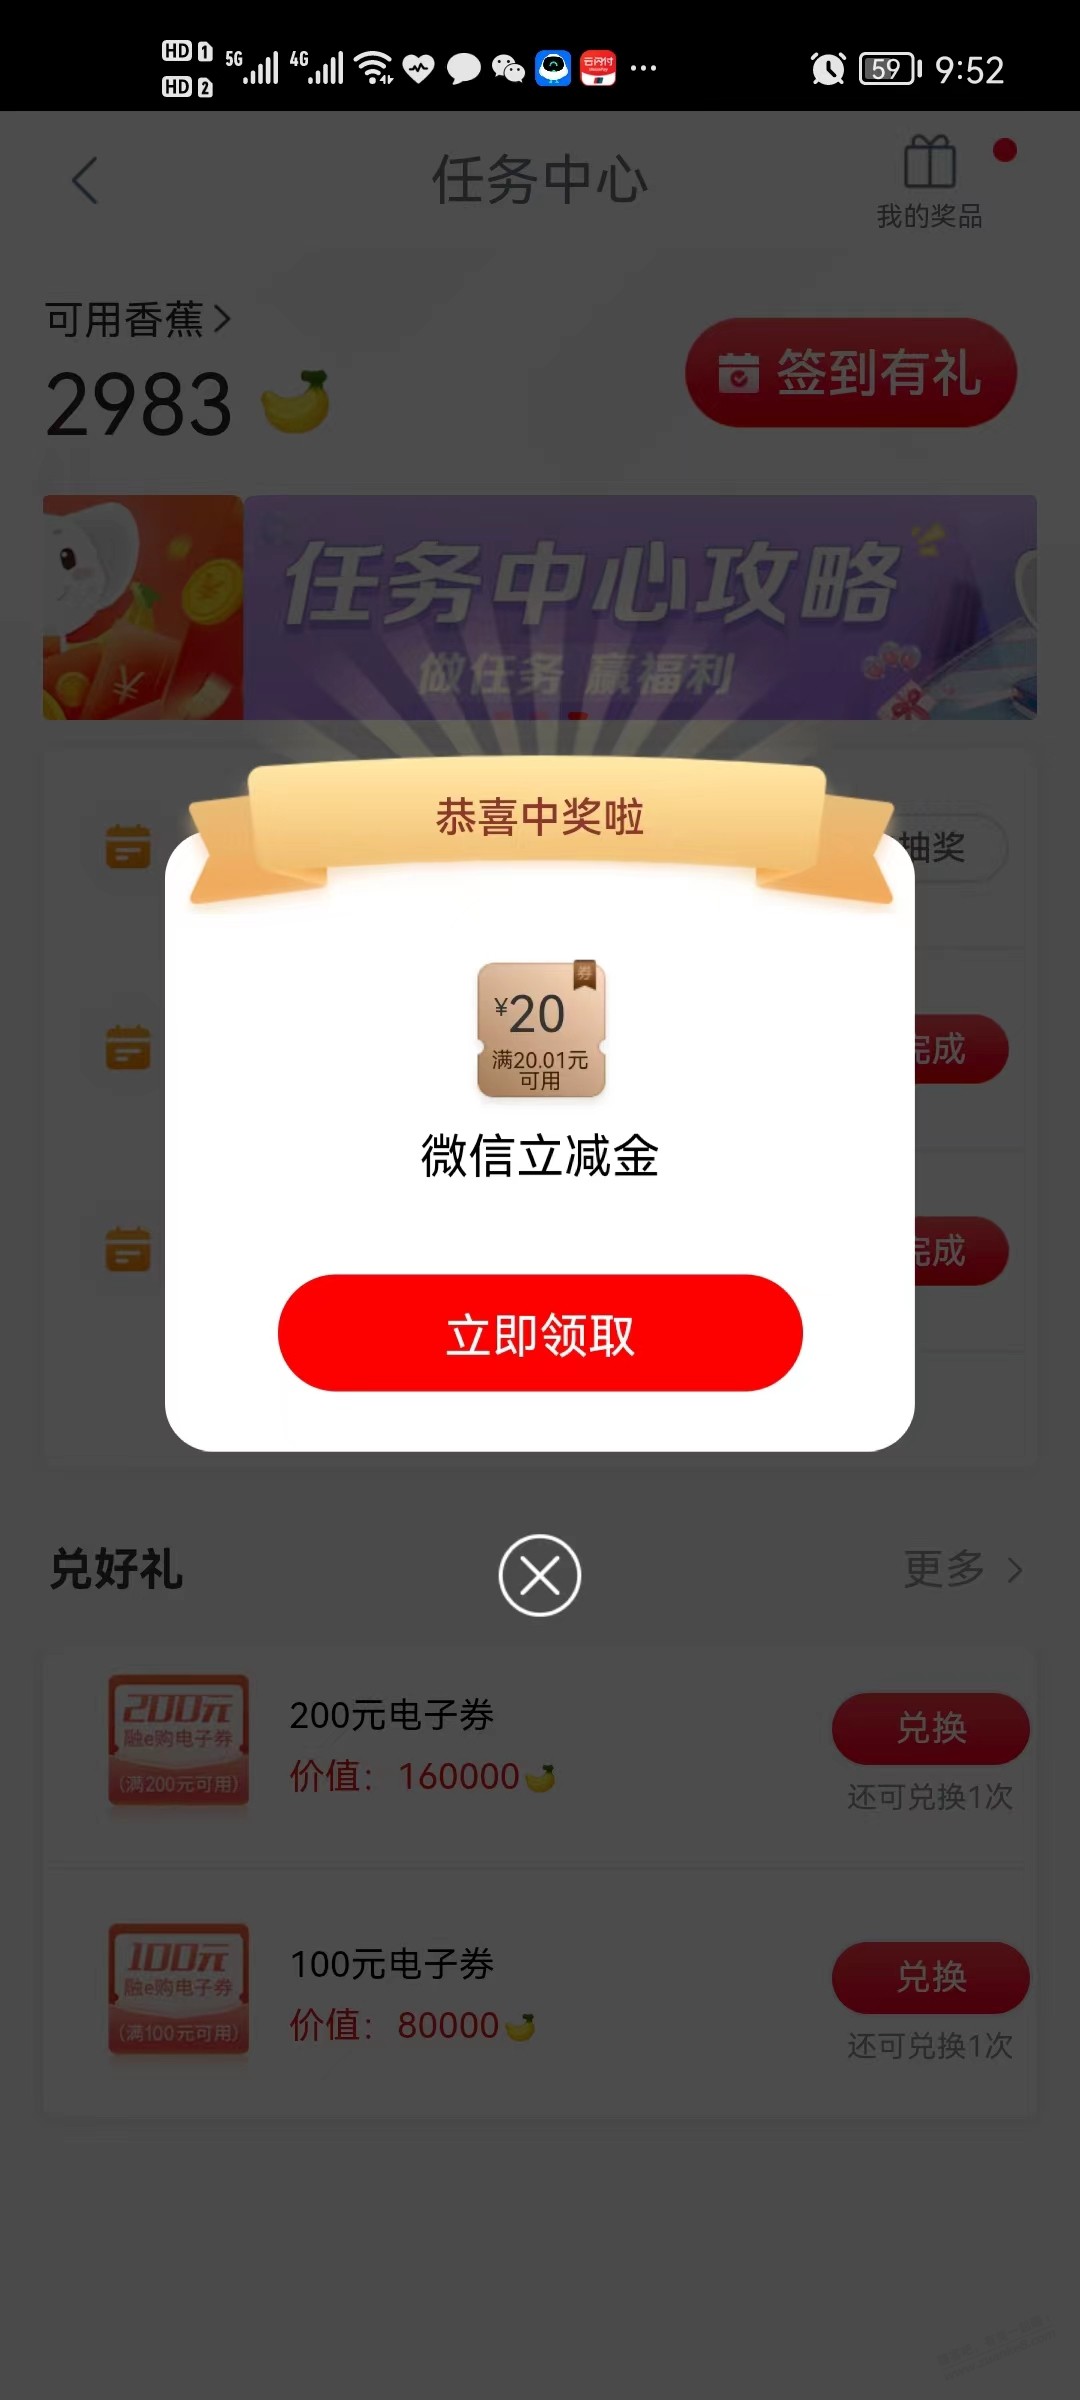 中国工商银行app-任务列表-兴农通大毛30+20